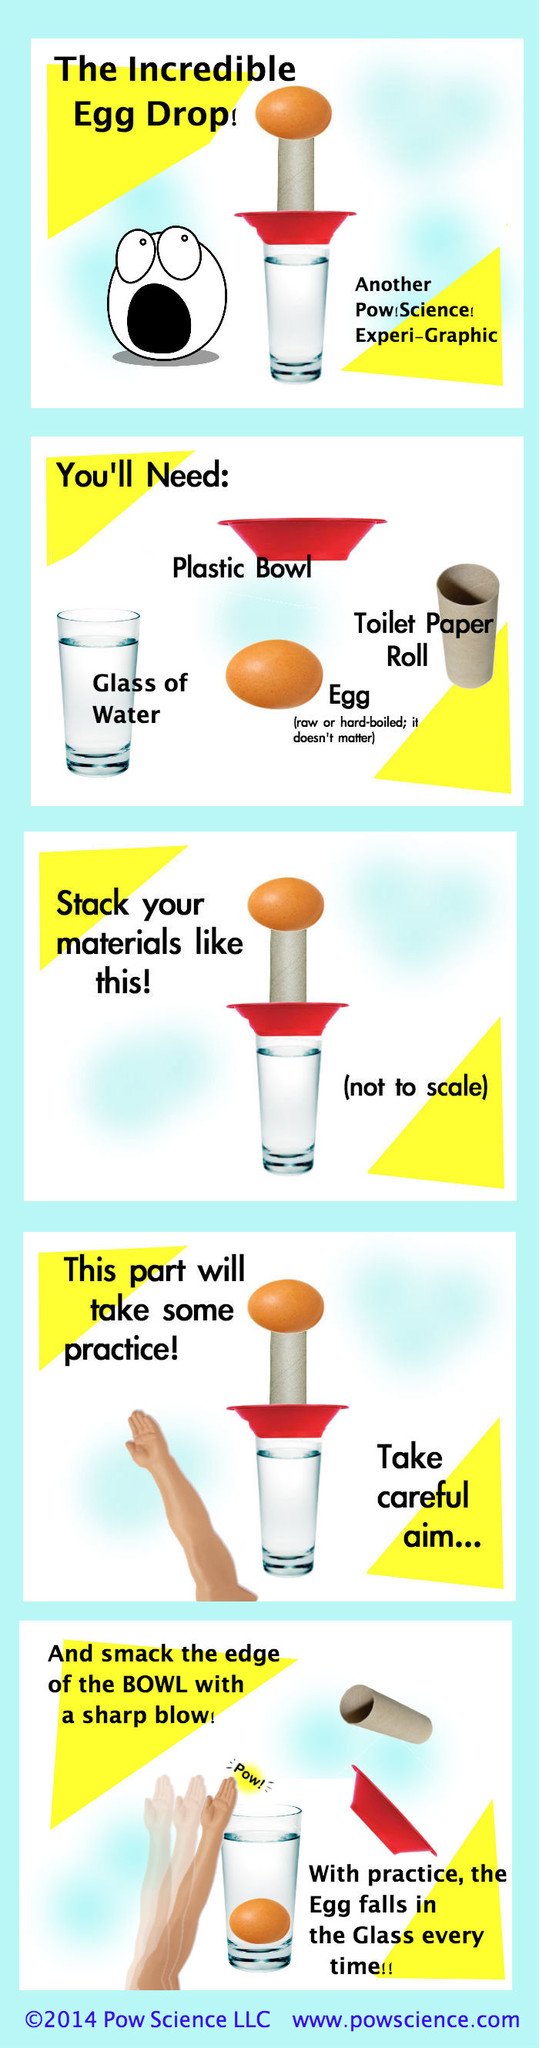 egg drop experiment inertia